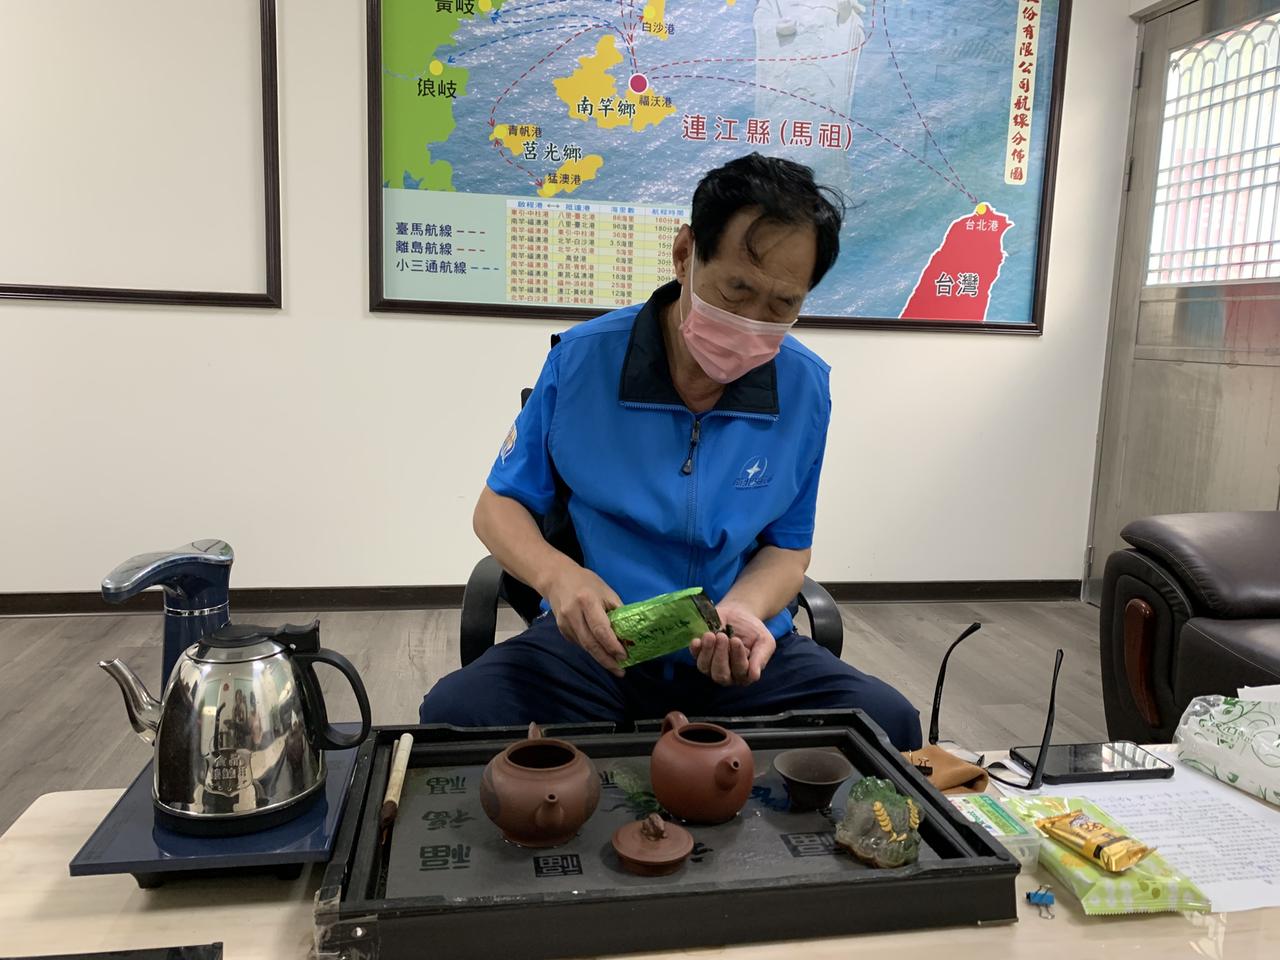 Schiffsunternehmer Chen Kai-shous bereitet in seinem Büro eine Kanne Tee zu. Hinter ihm ist eine Seekarte zu sehen mit den Strecken seiner Schiffe zwischen Taiwan und den Matsu-Inseln.